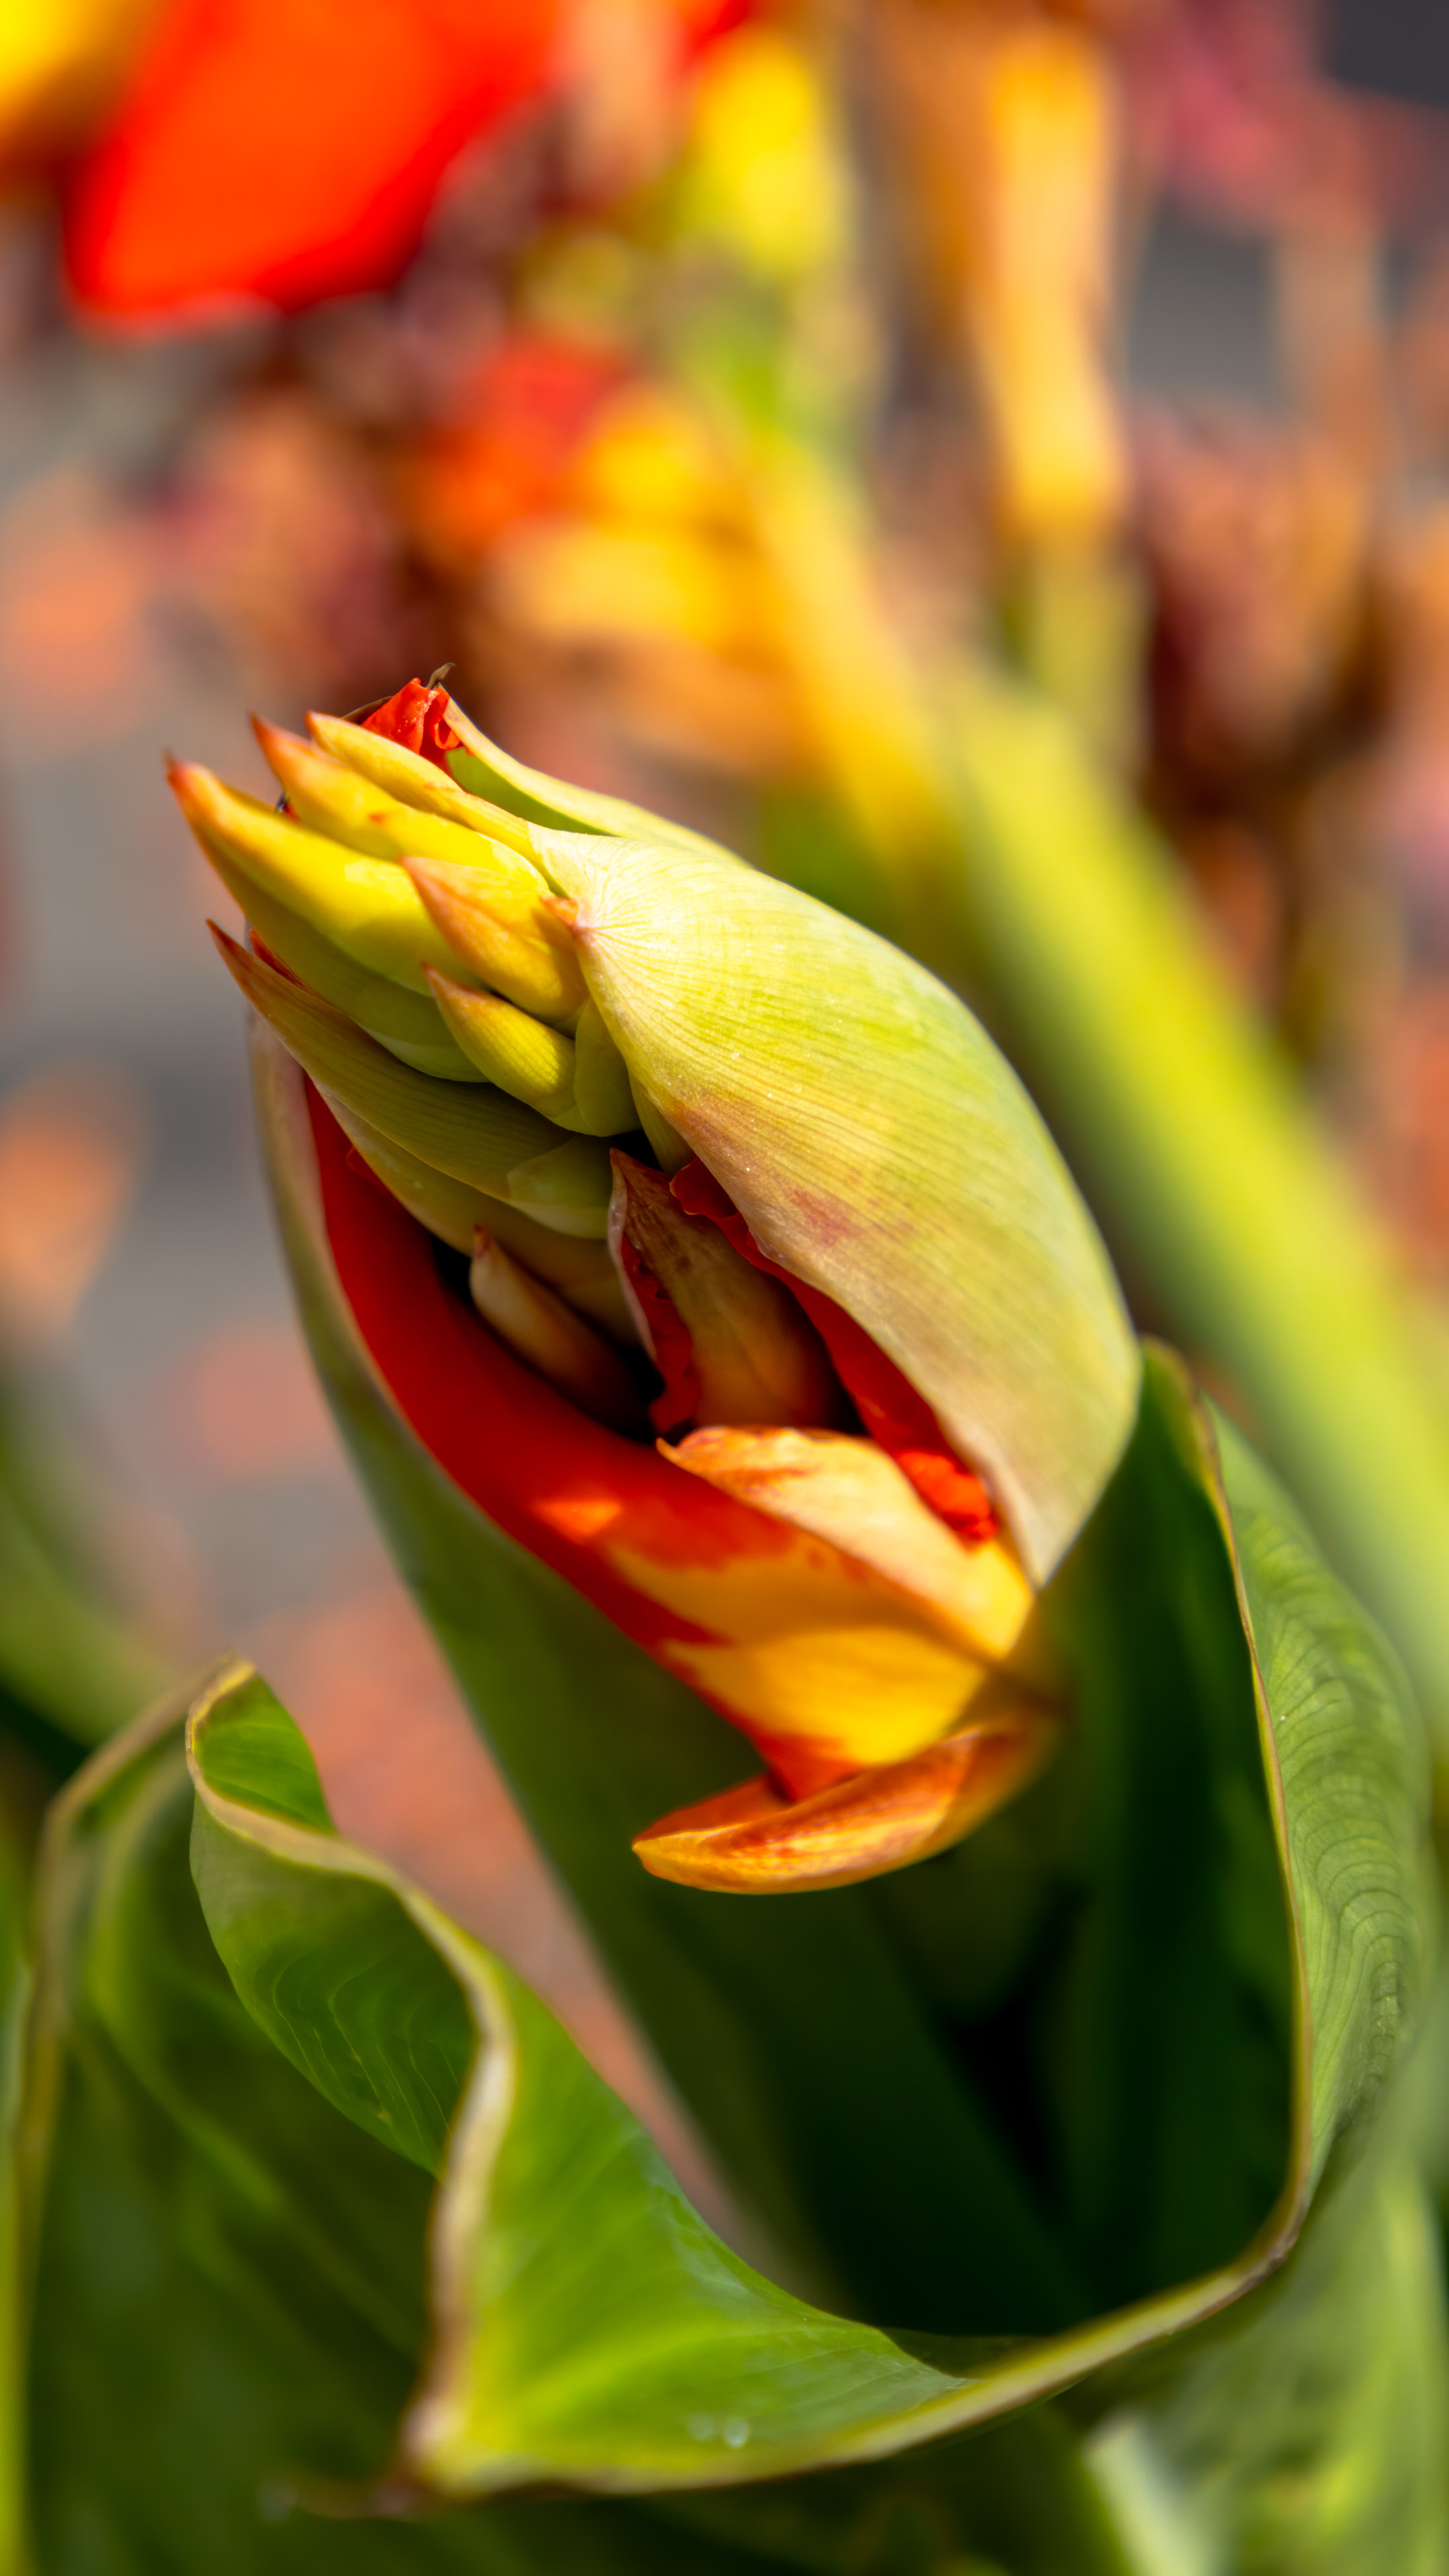 Faites l'expérience du meilleur de notre collection avec notre fond d'écran de fleur le mieux noté pour iPhone, choisi à la main pour ses détails époustouflants et ses couleurs vibrantes.